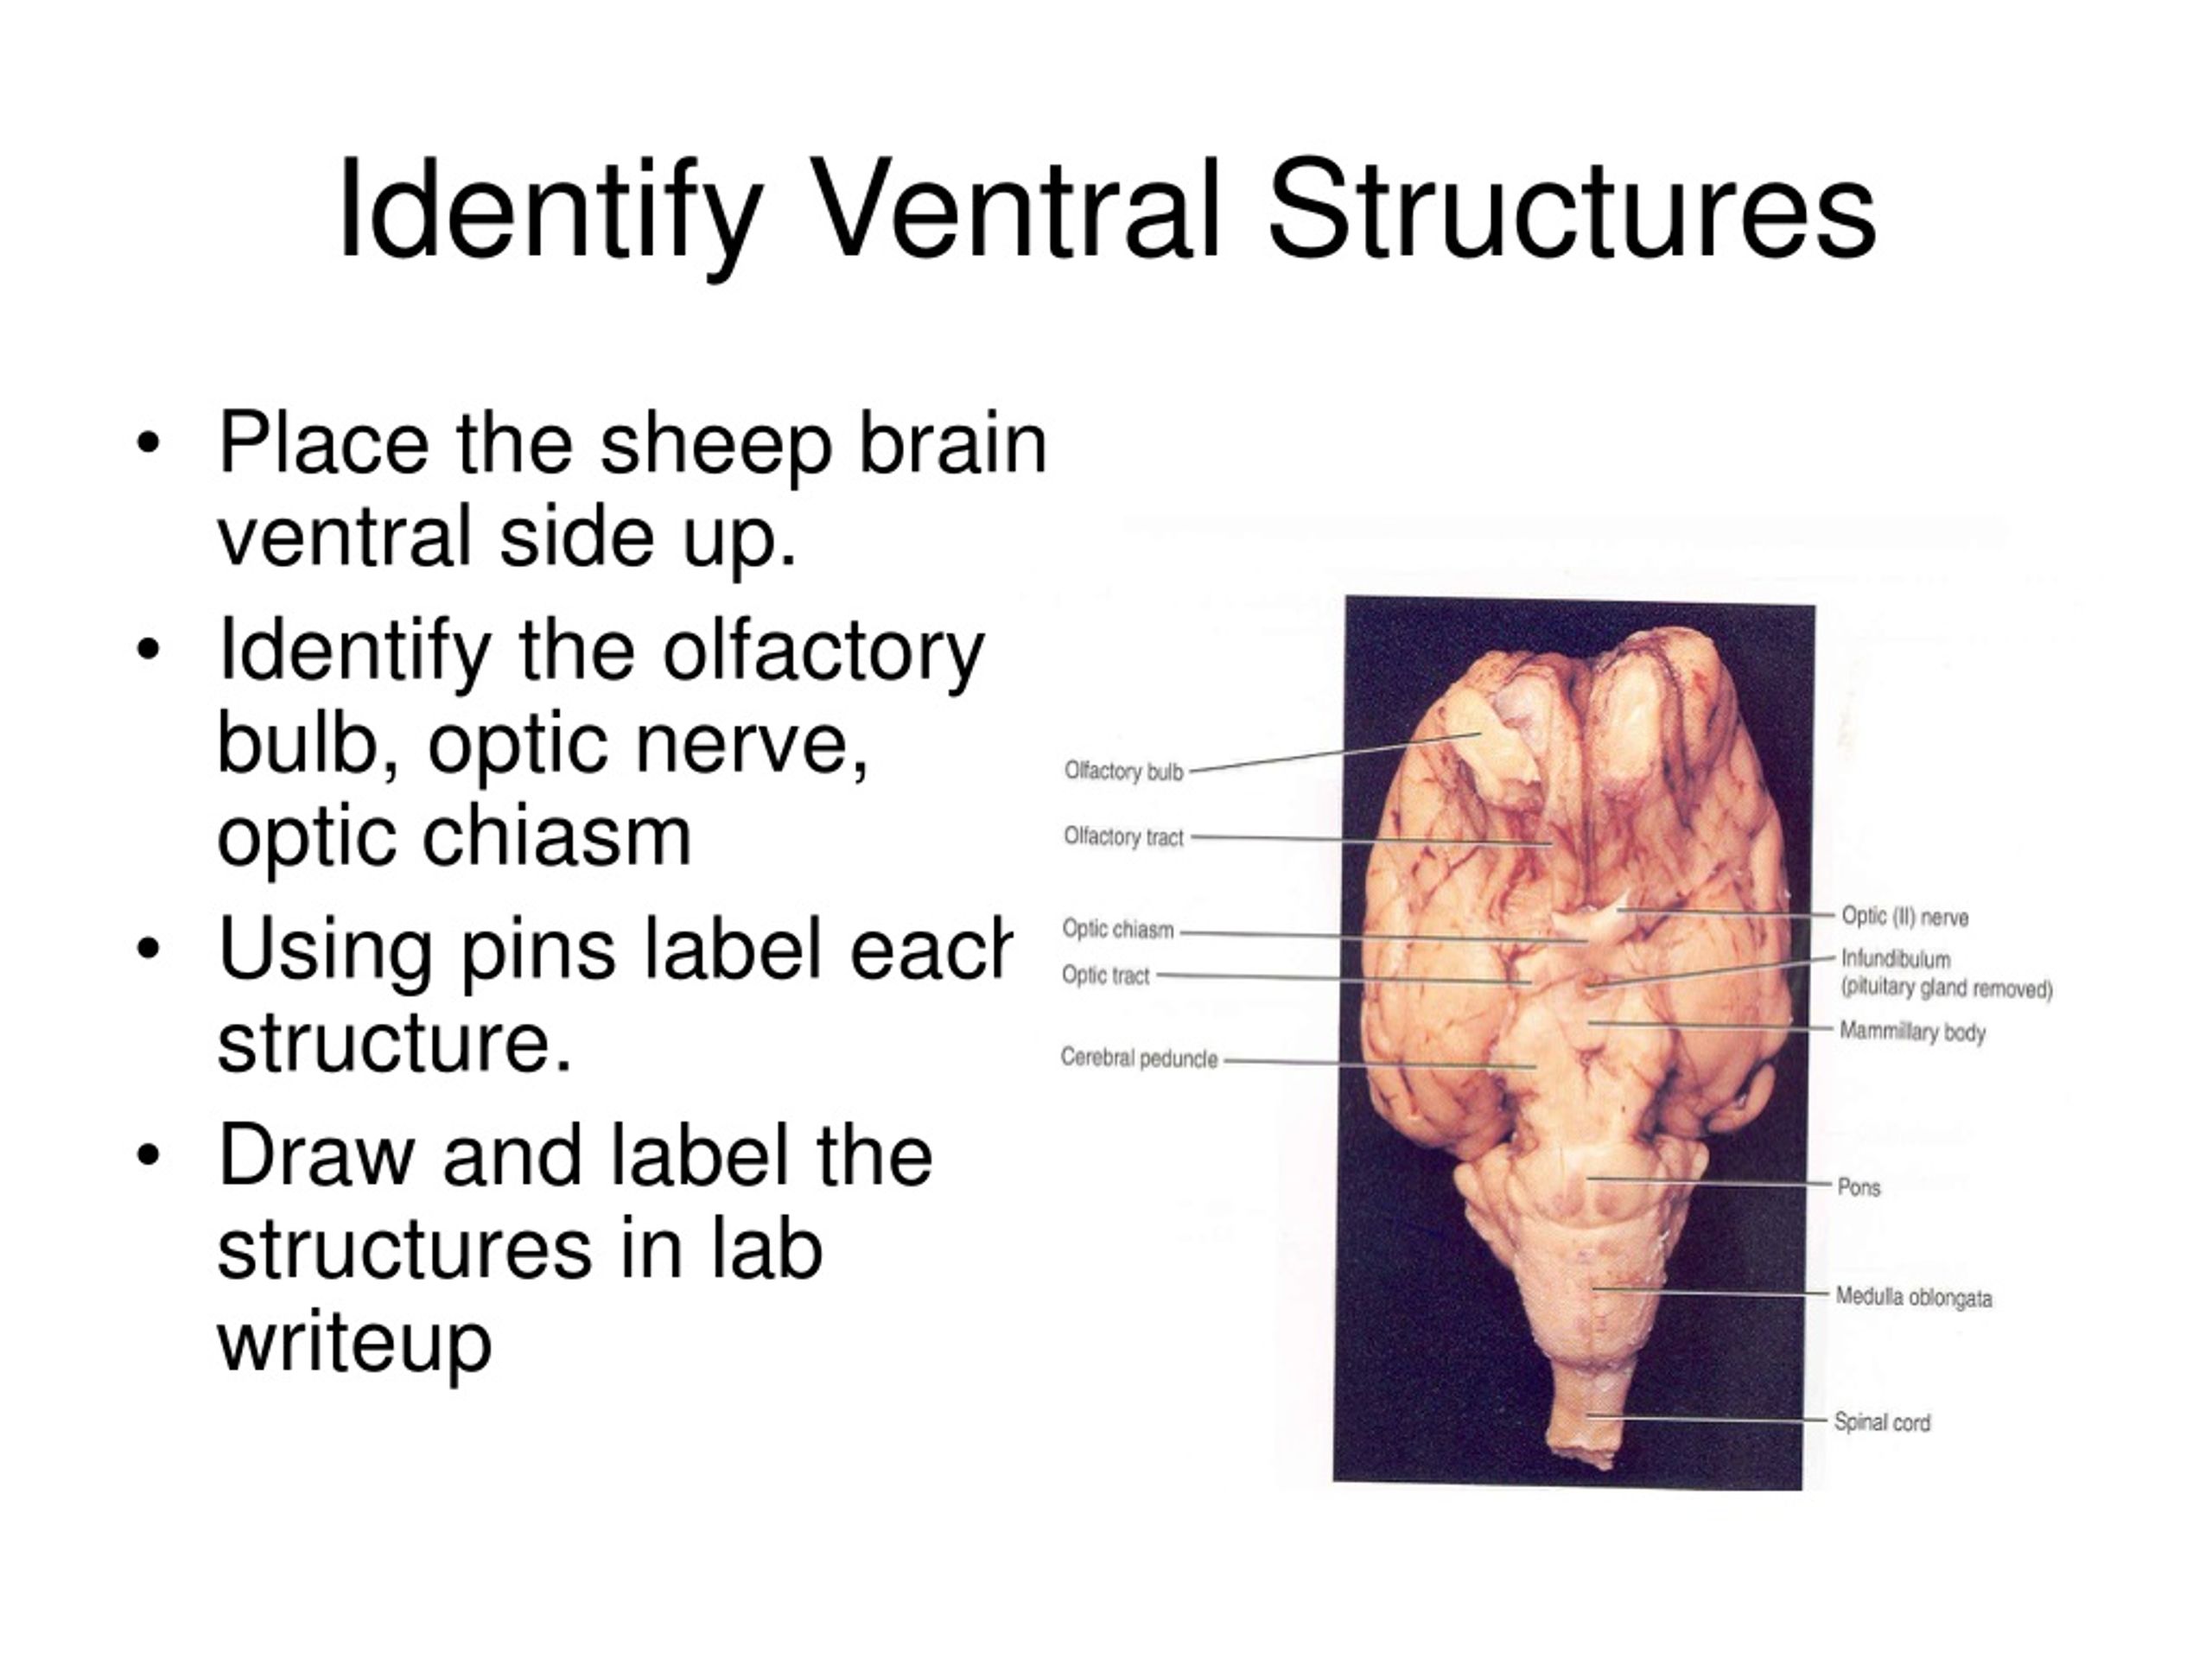 mammillary body sheep brain